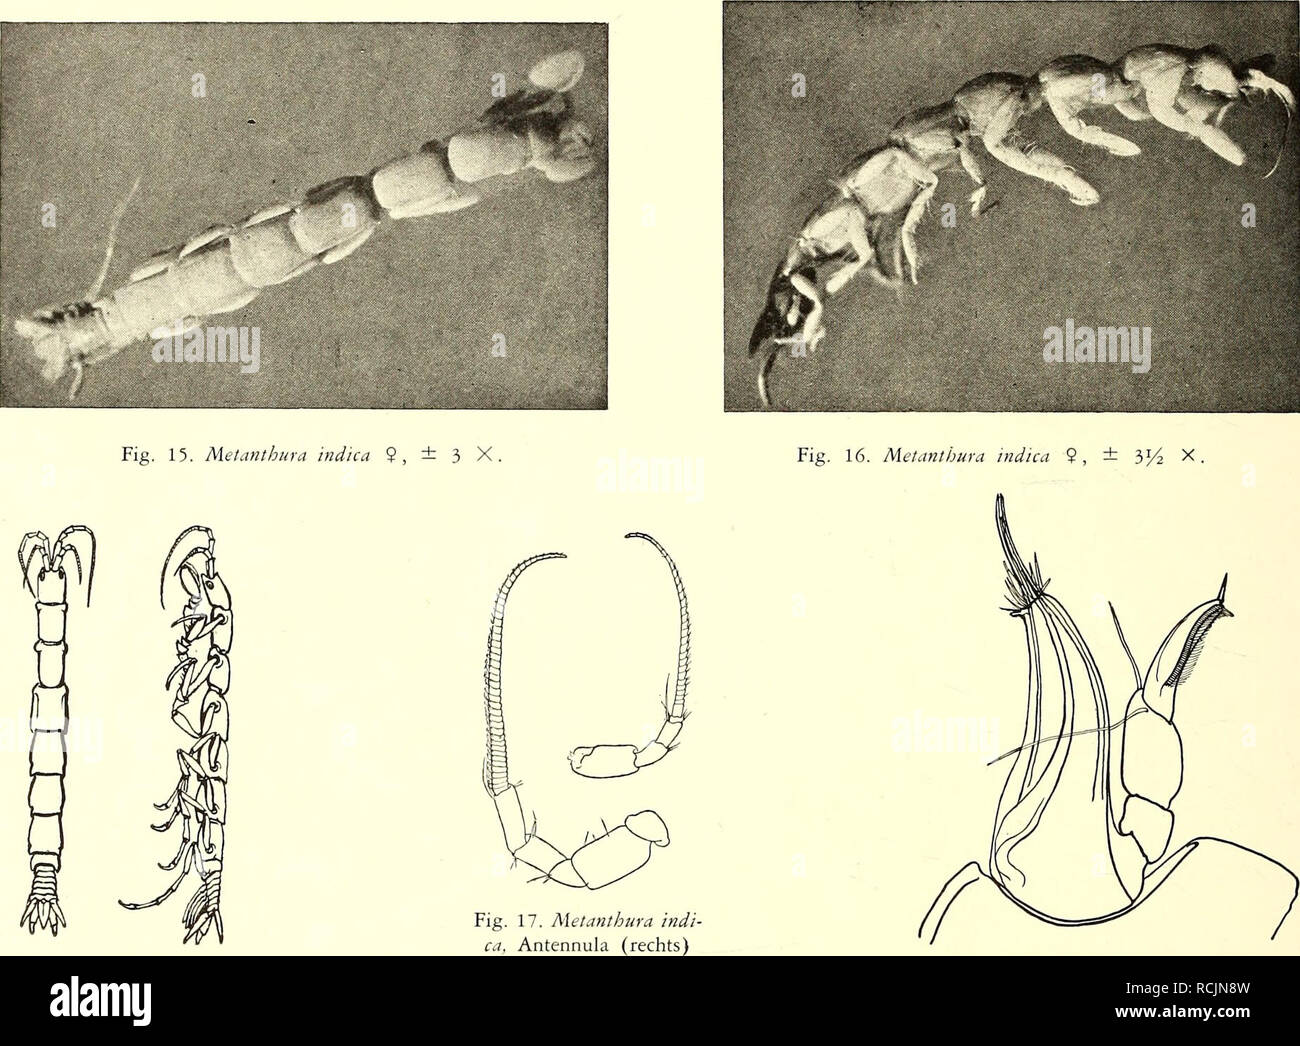 . Die Isopoden der Siboga-Expedition. Isopoda. 248 ISOPODA GENUINA Antennulae (Fig. 17) gut entwickelt, Flagellum mit etwa 30 Gliedern. Antennae länger, Flagellum mit etwa 44 Gliedern. Mandibula (rechte Fig. 18). Ebenso wie bei Katanthura ist die Mandibula ein konisches, hohles Organ; der Rand wird von einem Kranz von Stacheln umgeben. Aus der Öffnung treten wenigstens 3 (vielleicht 4) Lanzette nach aussen; diese Lanzette setzen sich fort in der Mandibula selbst; sie sind. Fig. 14. Metanthura indica und Antenna (links), Fig. 18. Metanthura indica, rechts 9, ± 2 X. 12 X. Mandibula, 50 X. Stecho Stock Photo